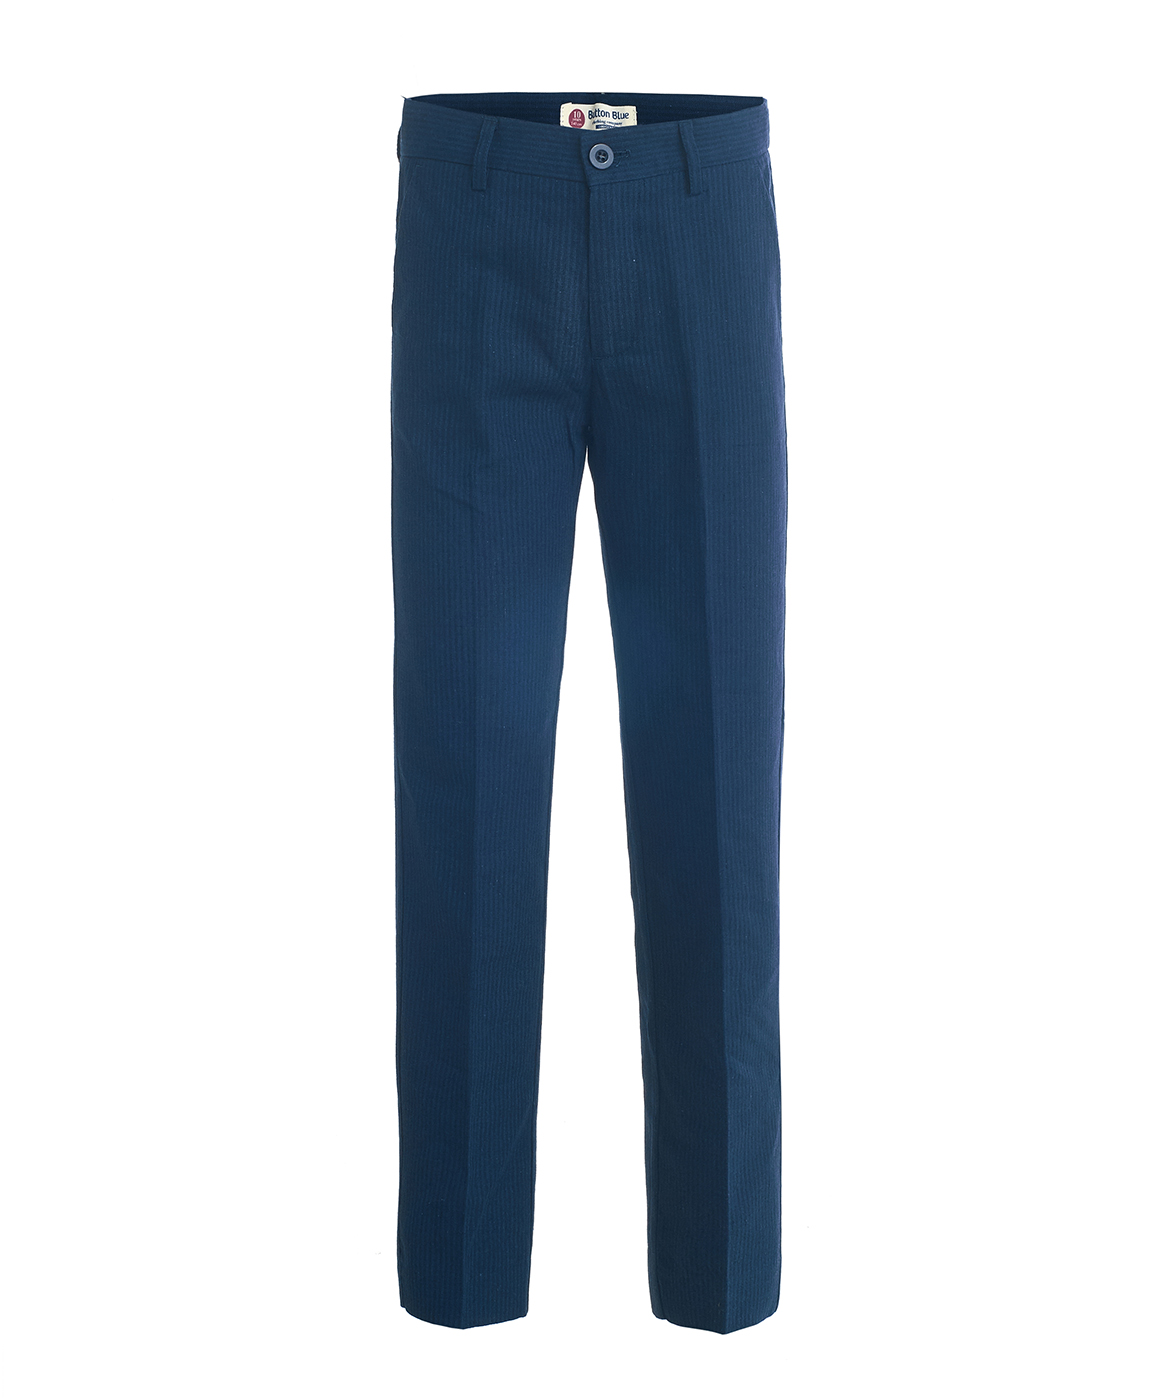 Синие брюки в полоску Button Blue 119BBBP63021005, размер 146, цвет синий - фото 1